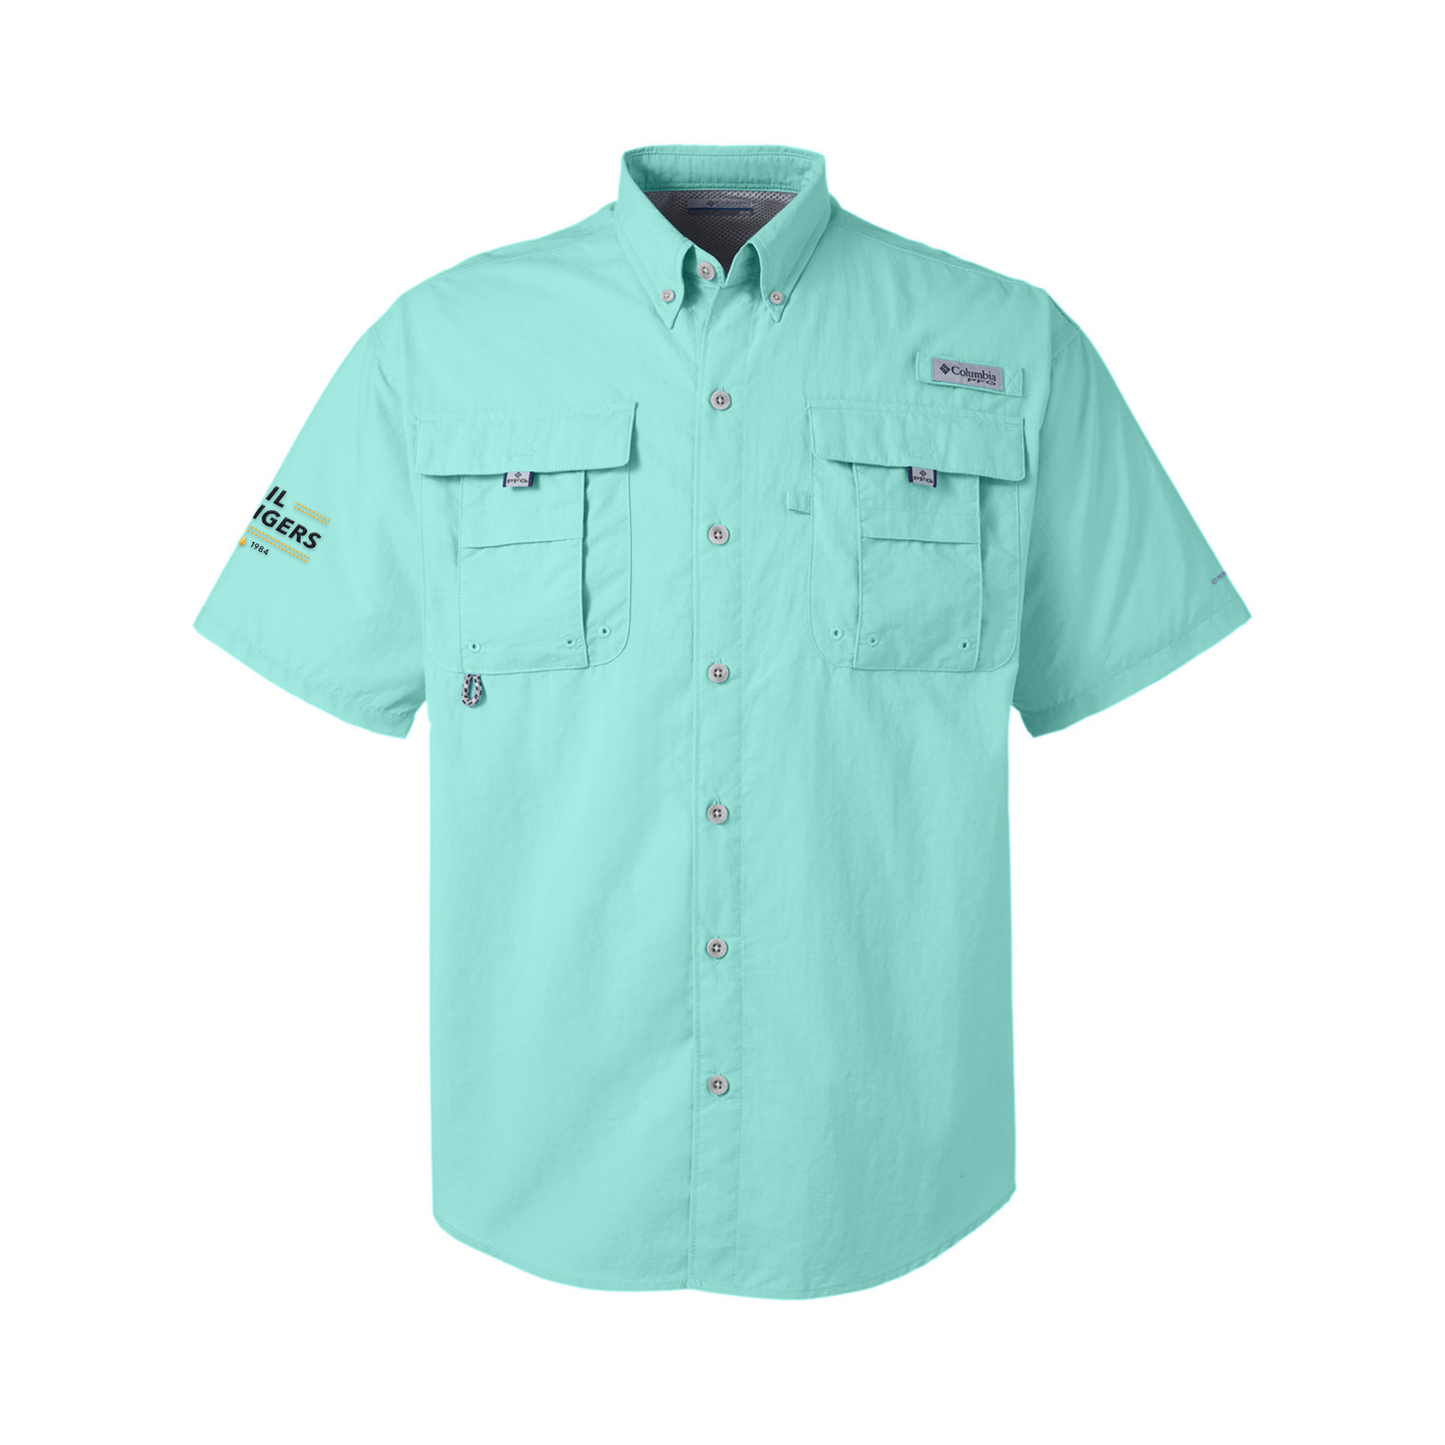 Men's Short-Sleeve Button Up Shirt